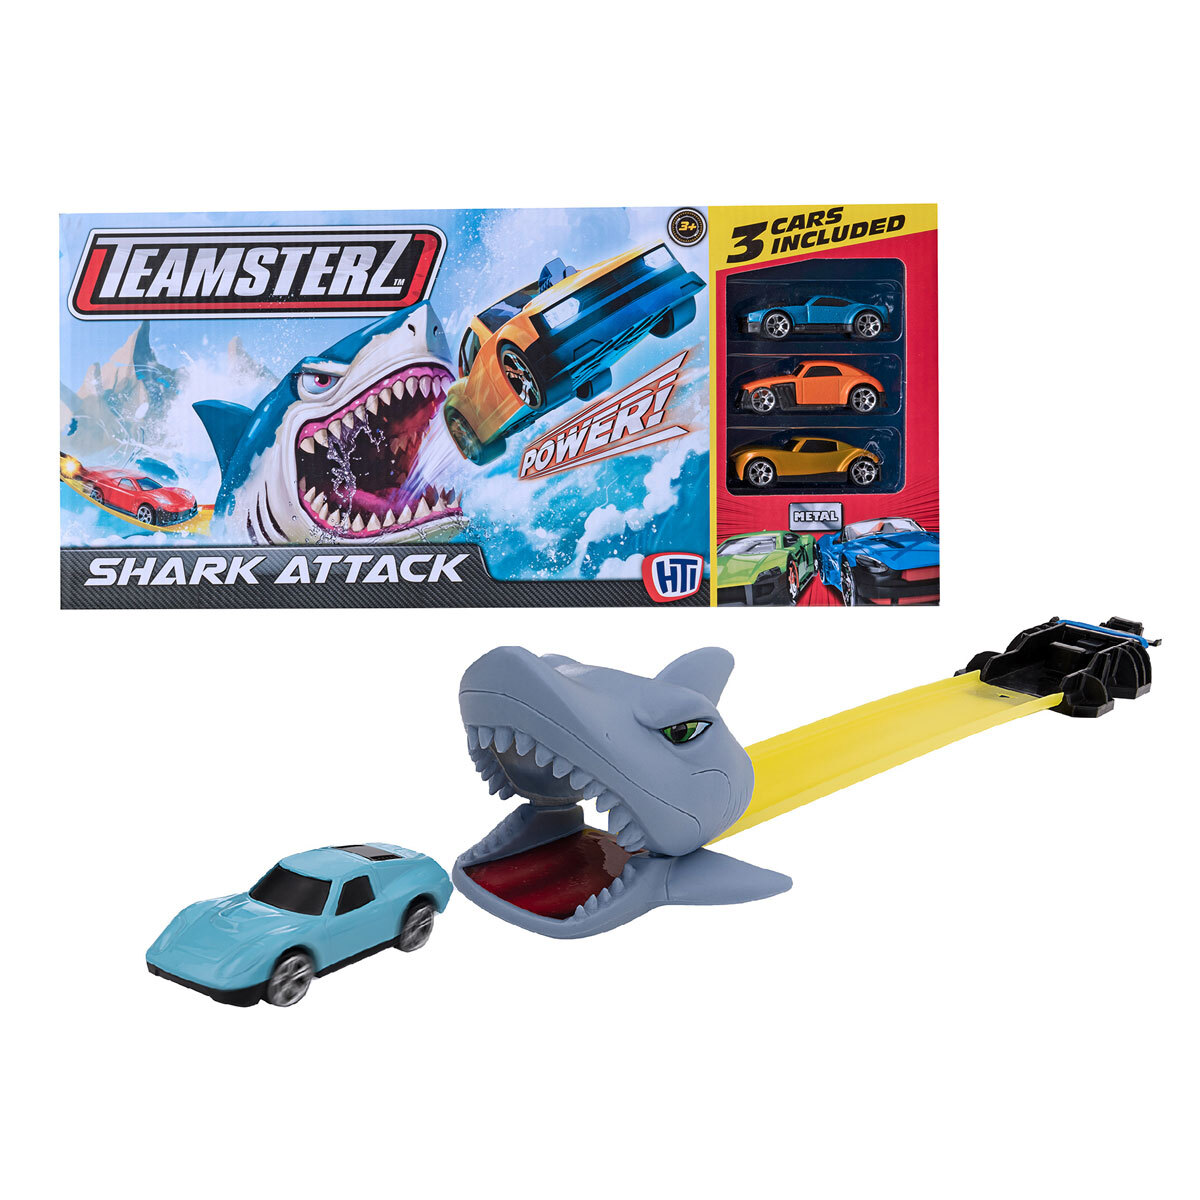 Teamsterz Shark Attack 